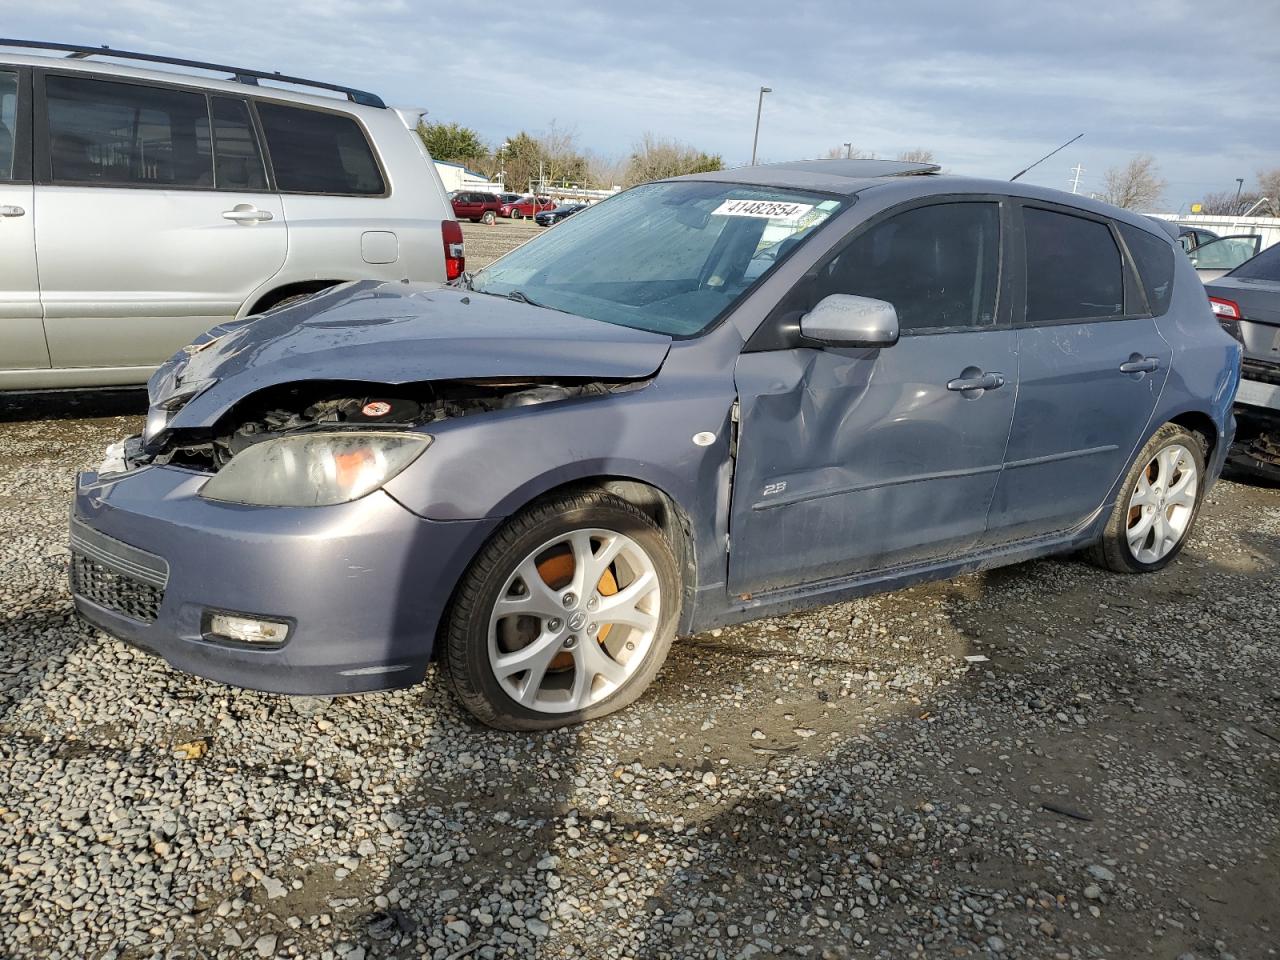  Salvage Mazda Mazda3